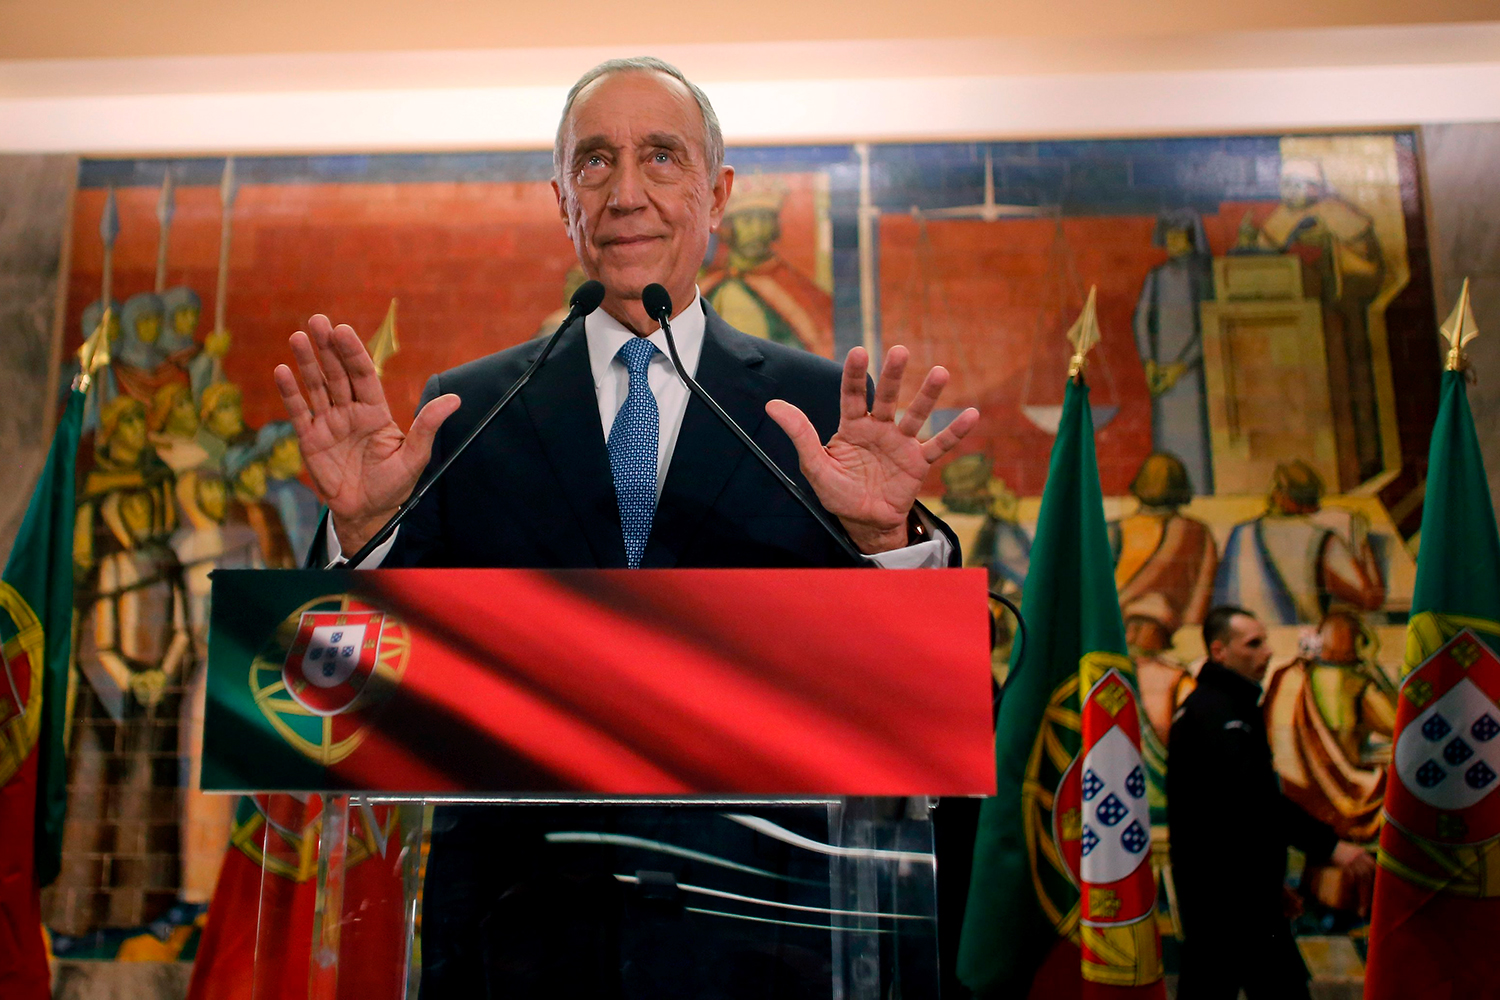 El moderado 'profesor Marcelo' de Sousa se hace con la presidencia en Portugal